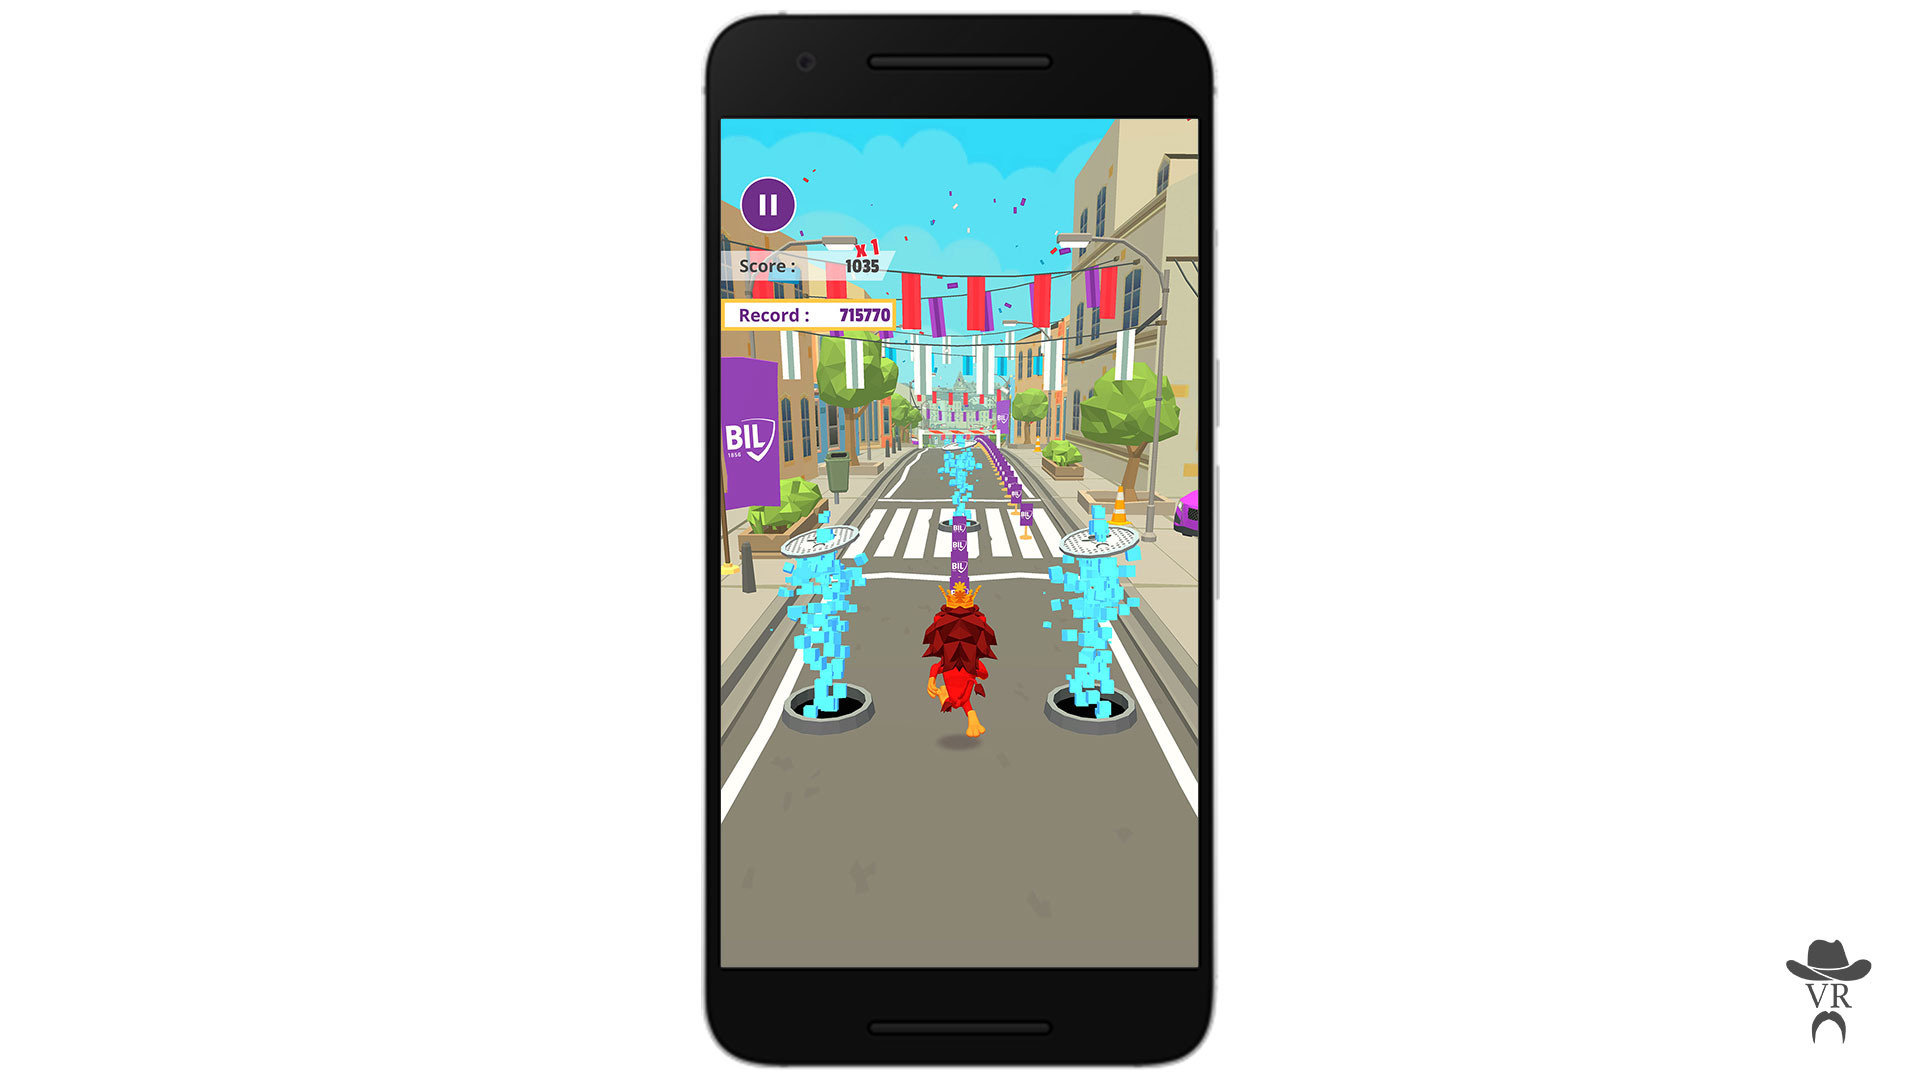 BIL Runner mobile game